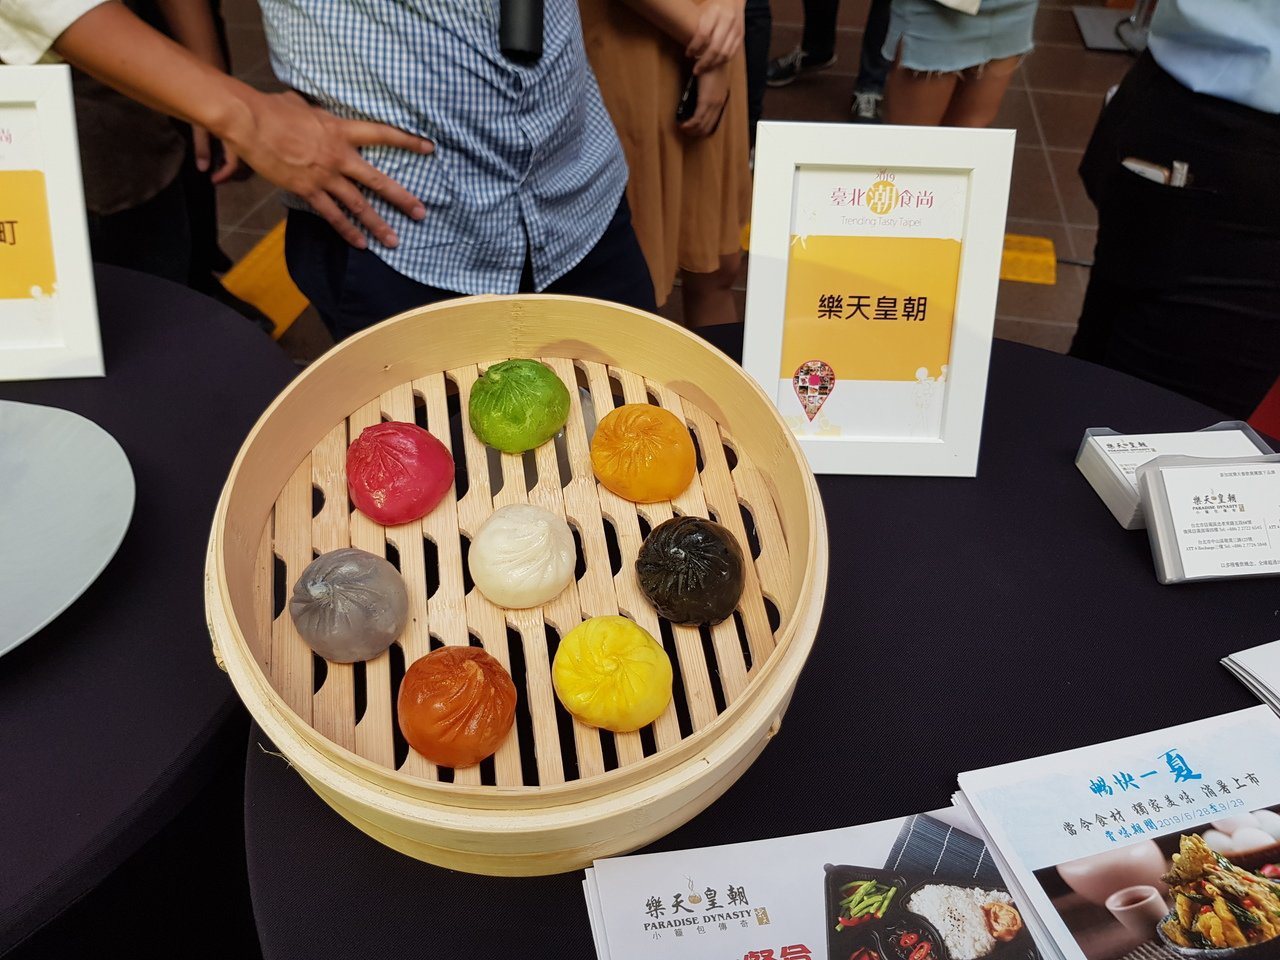 北市商業處今年以「台北潮食尚」為主題，篩選出42家台北潮食尚餐廳，今天也邀請部分業者在市府展示特色餐點、甜點。